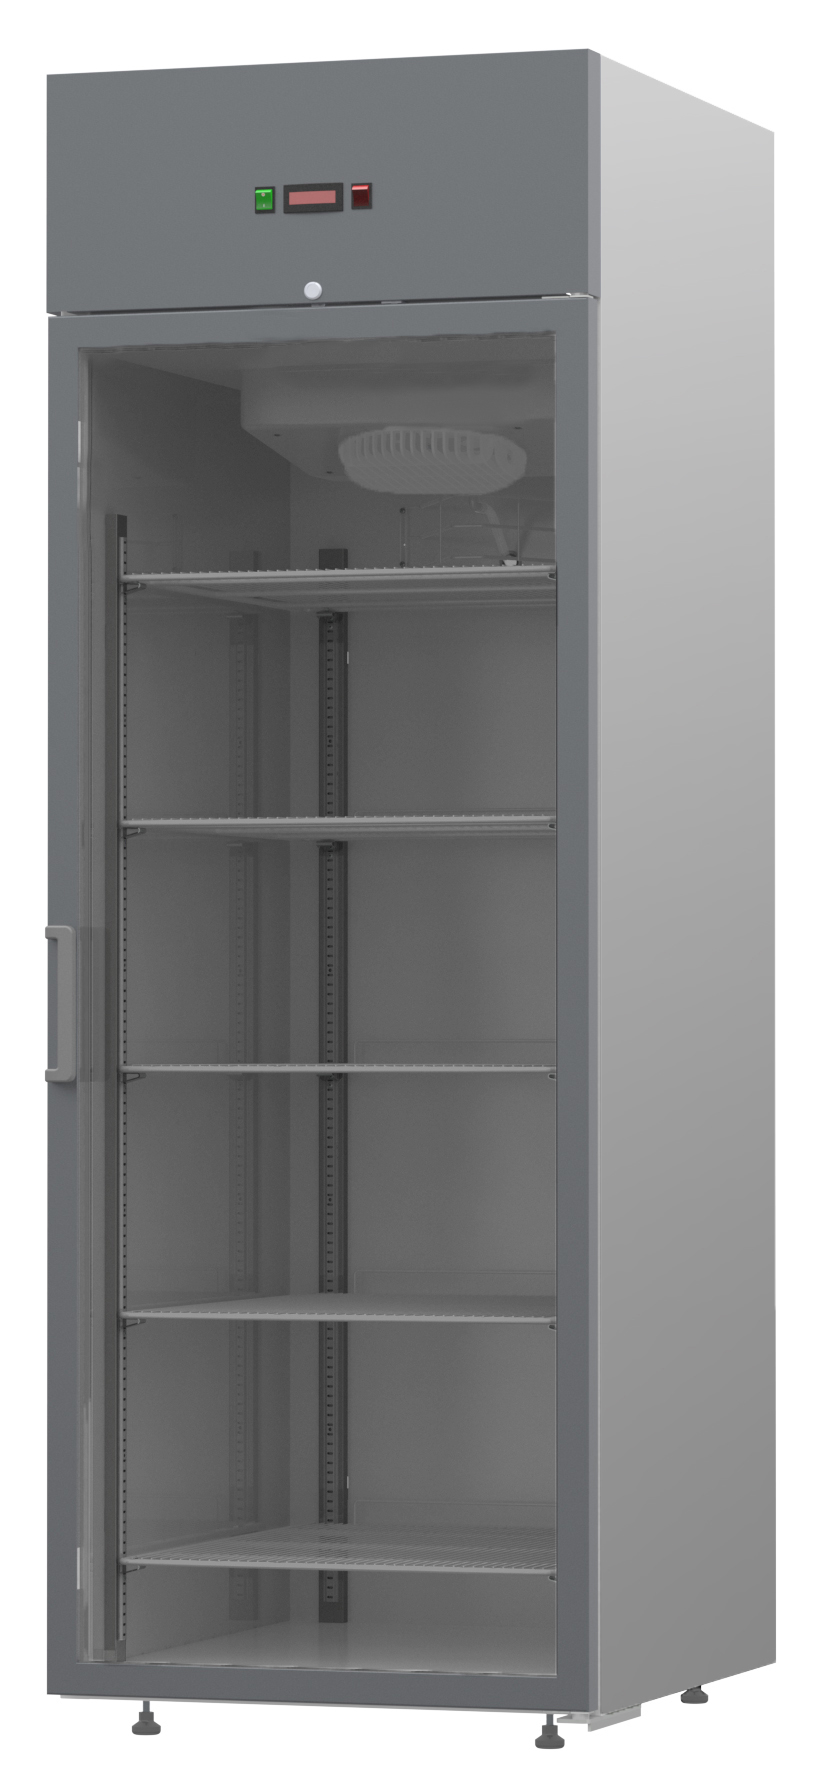 Шкаф холодильный V0.5-GD